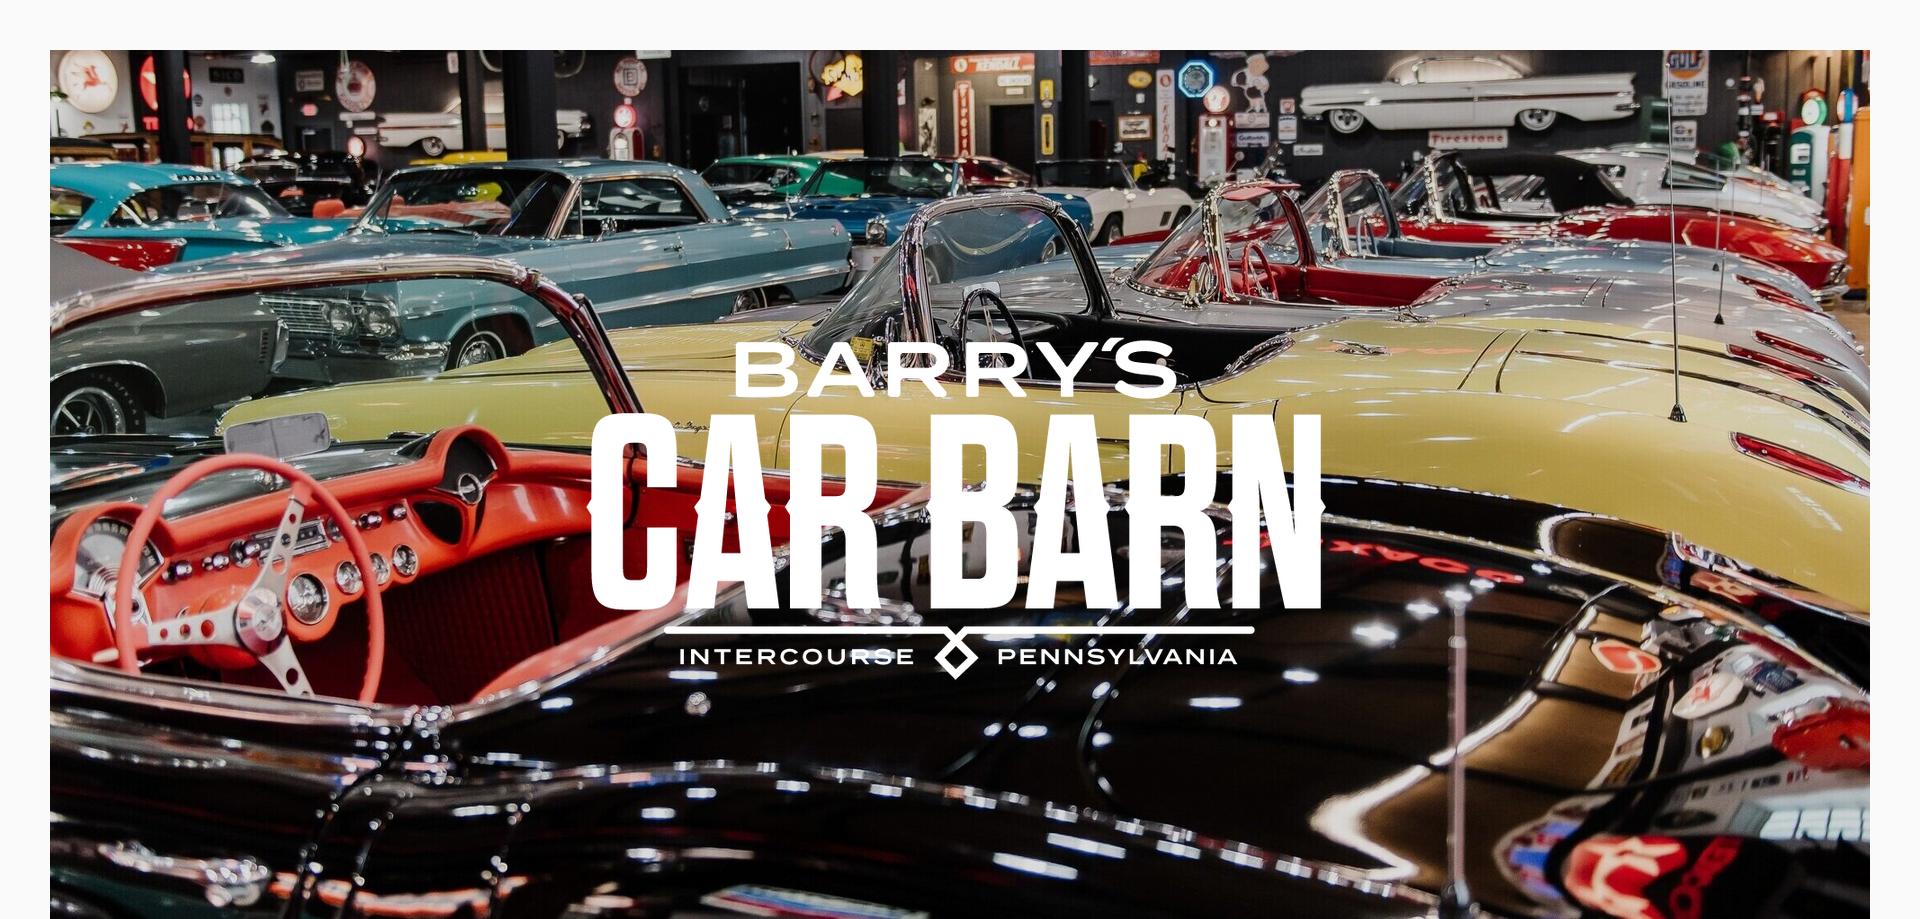 Barry’s Car Barn